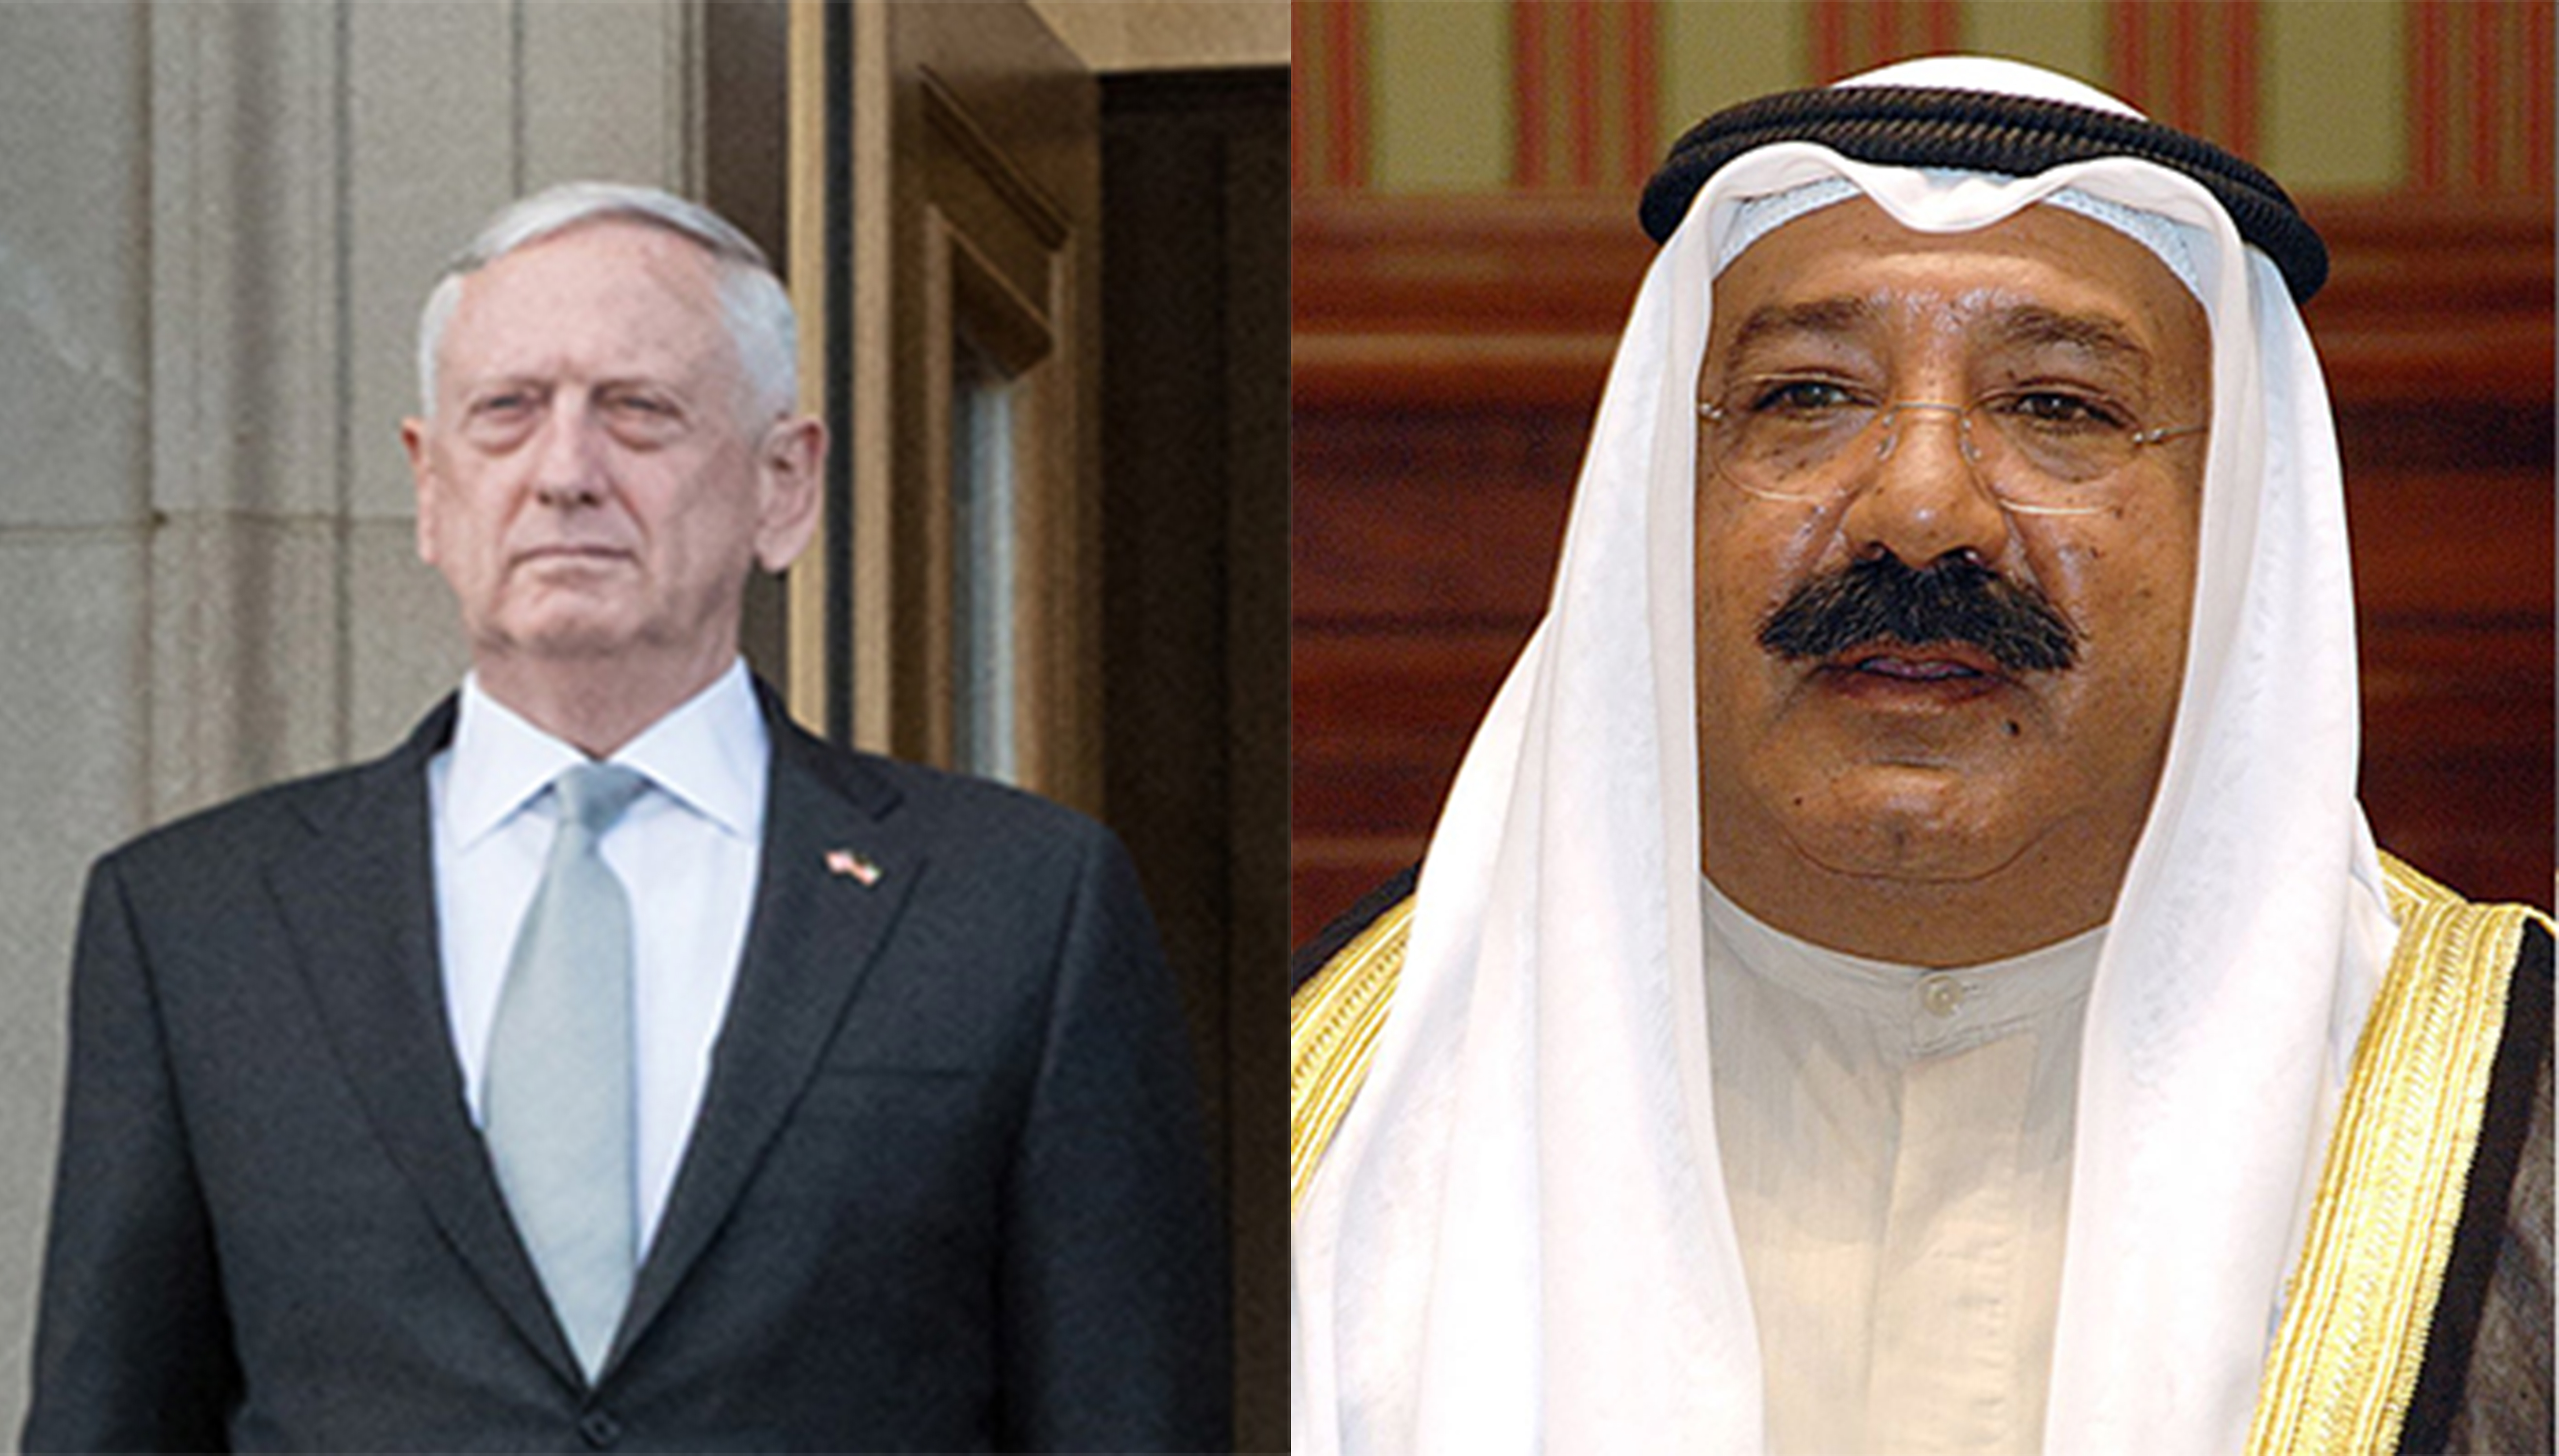 Kuwait's First Deputy Prime Minister and Minister of Defense Sheikh Nasser Sabah al-Ahmad al-Sabah and US Secretary of Defense Jim Mattis